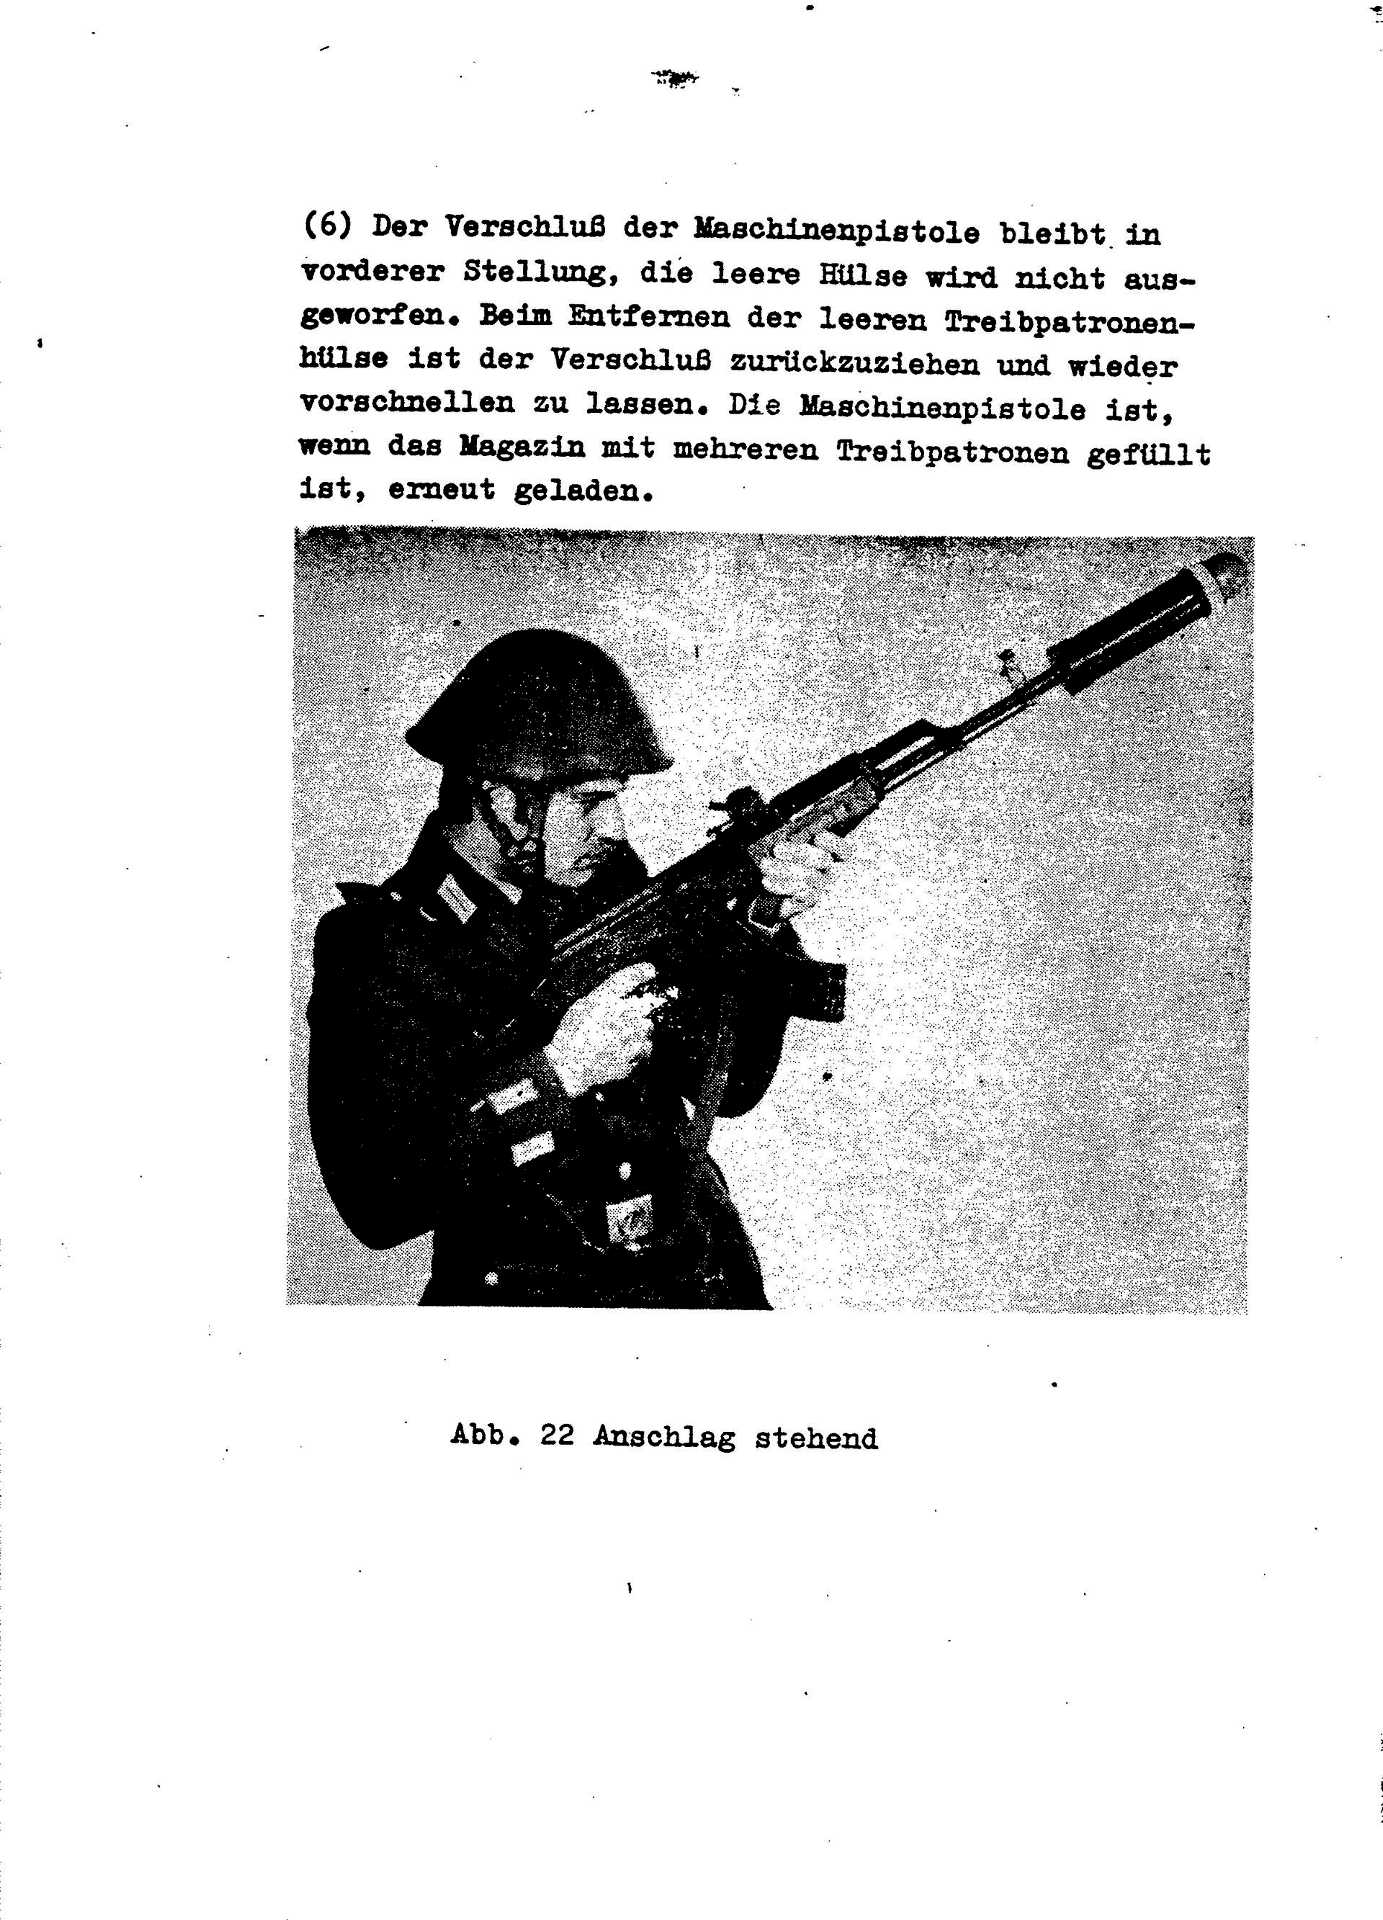 Война история оружия телеграмм фото 100